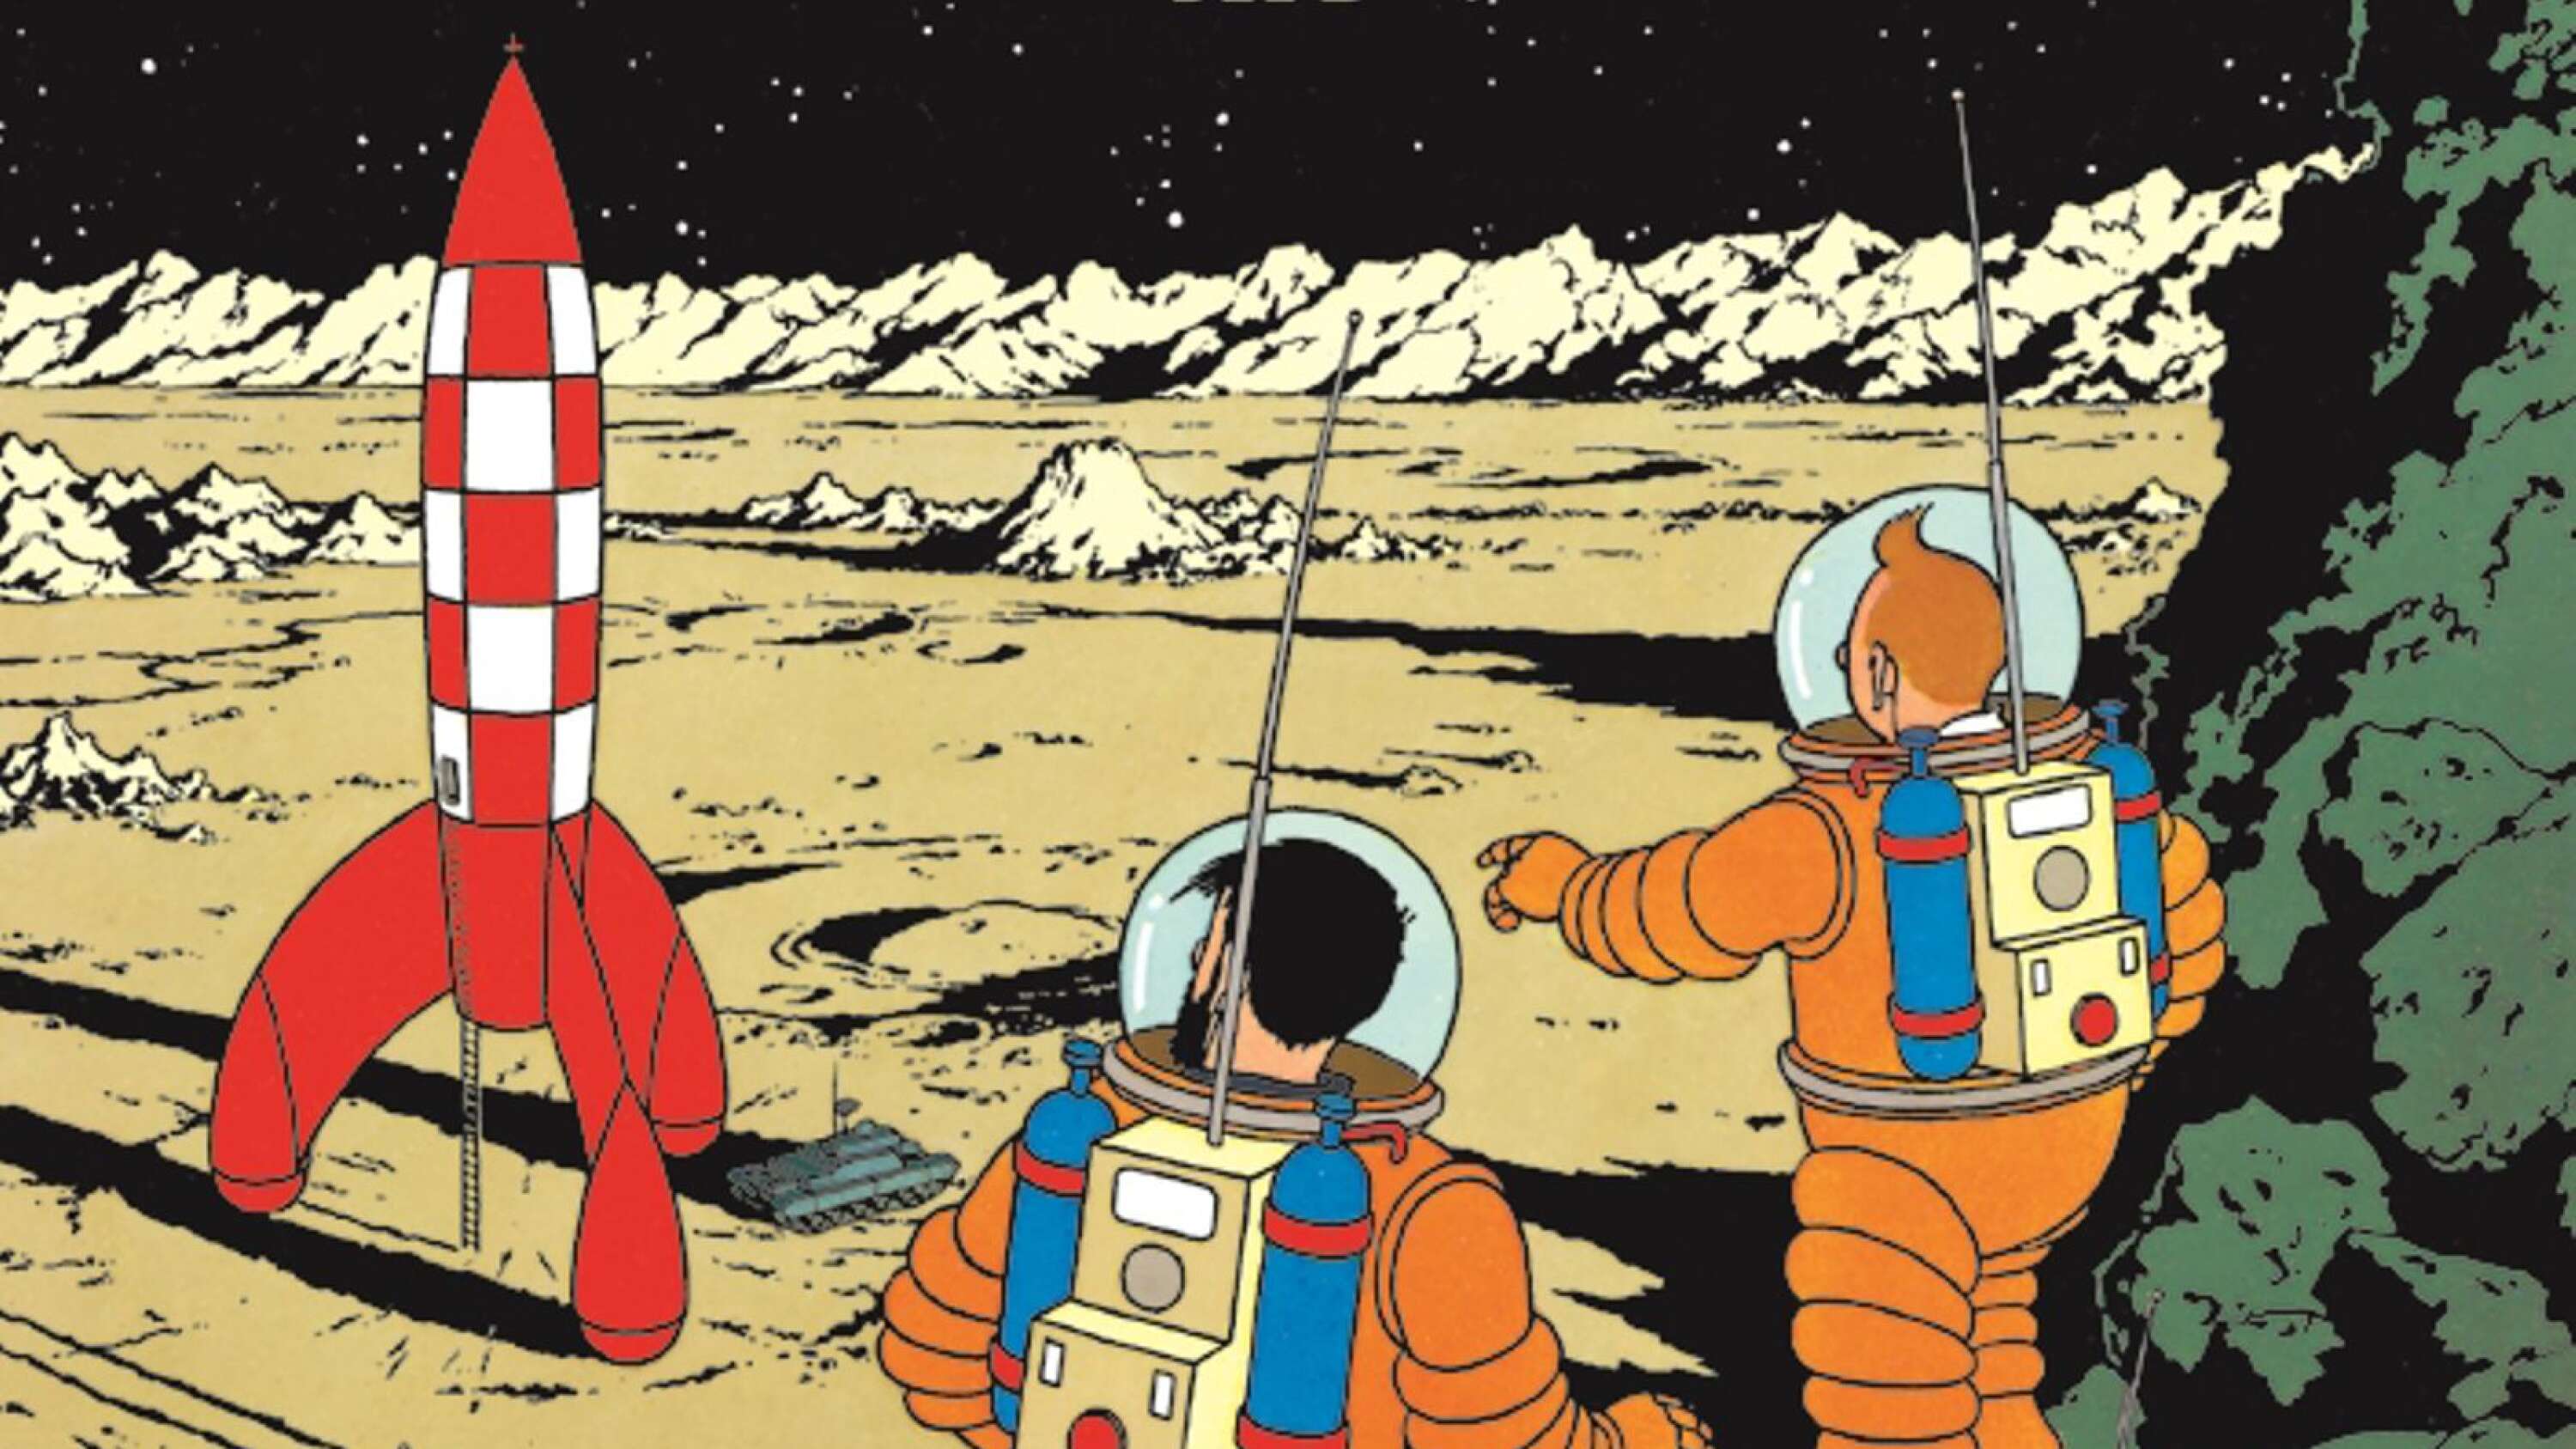 Jan Persson gillar Tintin och Månen tur och retur-albumen. Han till och med använder sig av bilder ur serieböckerna när han lär upp nya projektmedarbetare.